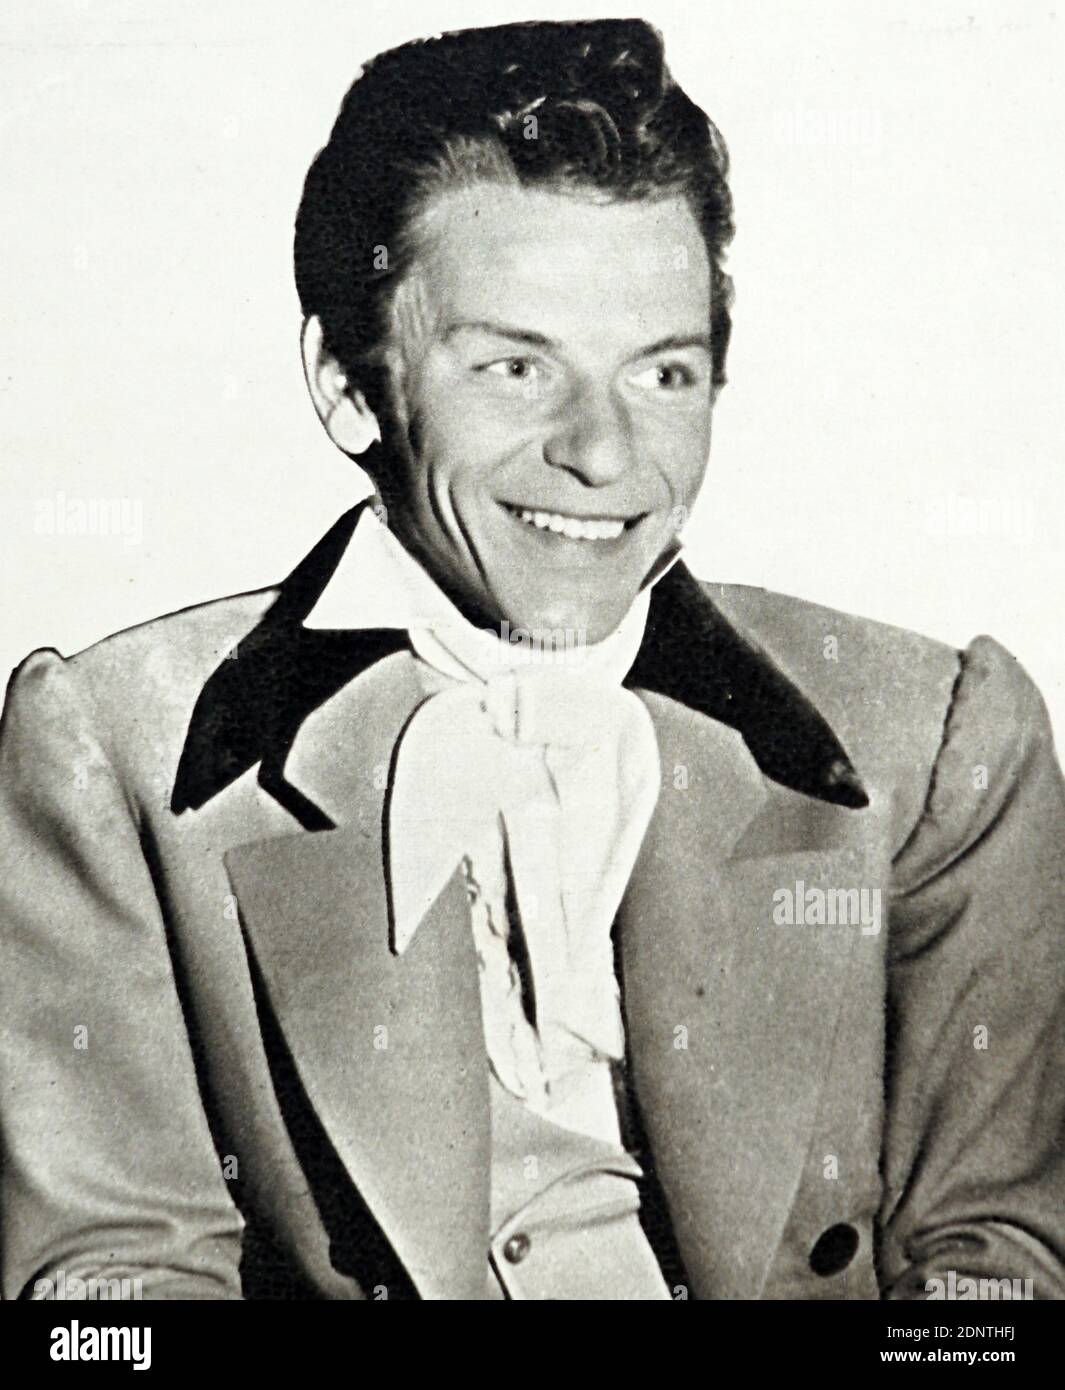 Photographie de Frank Sinatra (1915-1998) chanteur, acteur et producteur américain. Banque D'Images